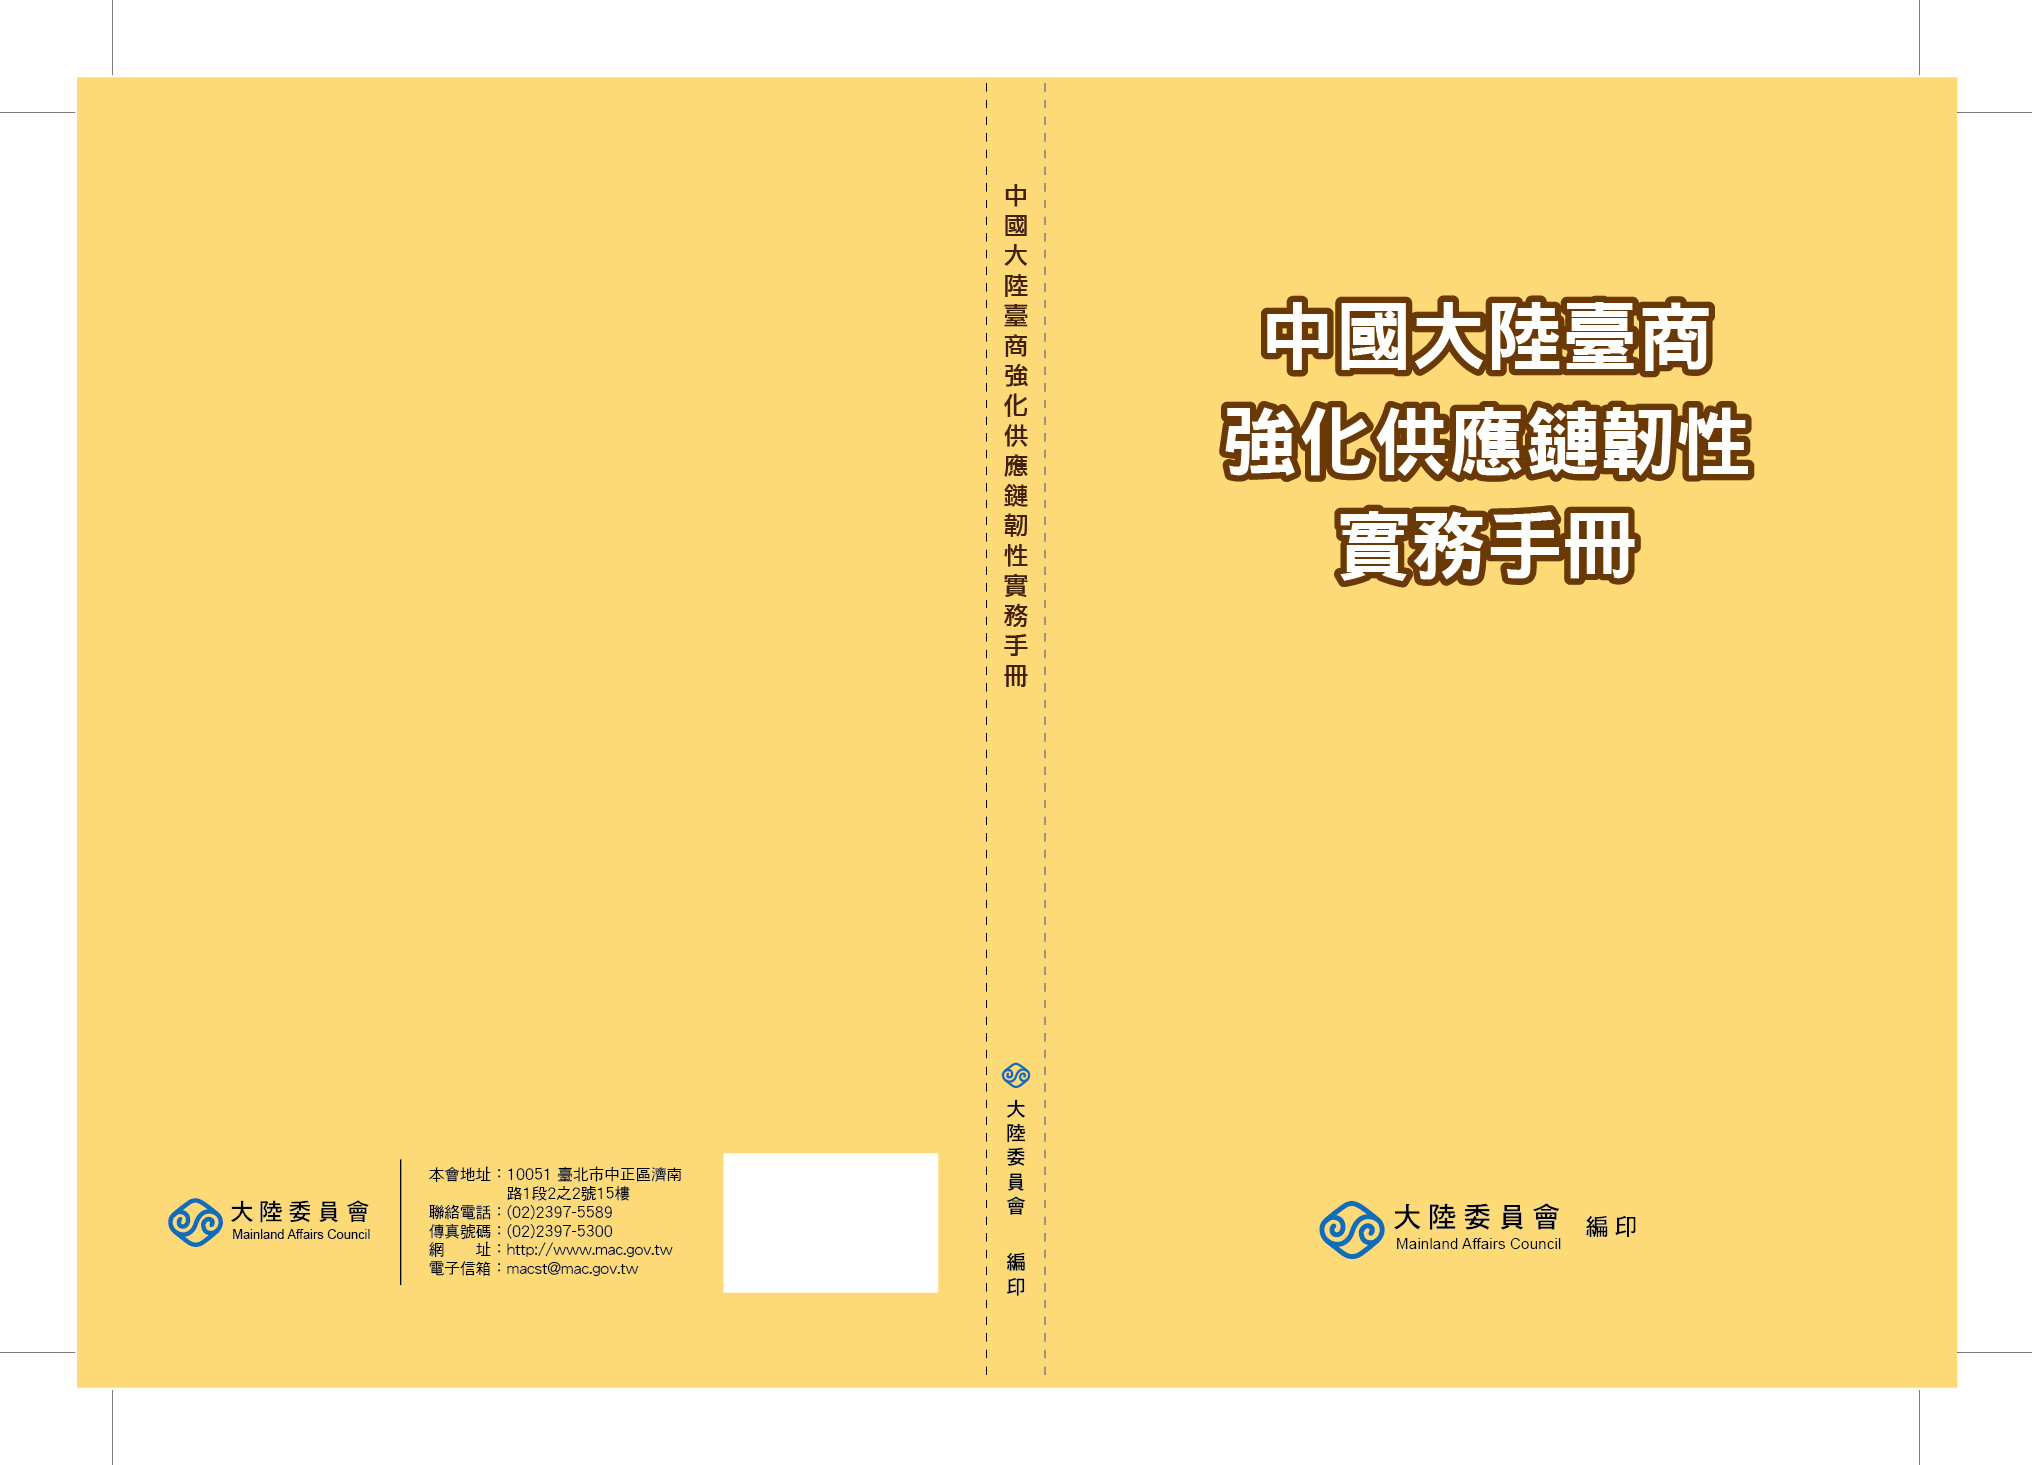 中國大陸臺商強化供應鏈韌性實務手冊